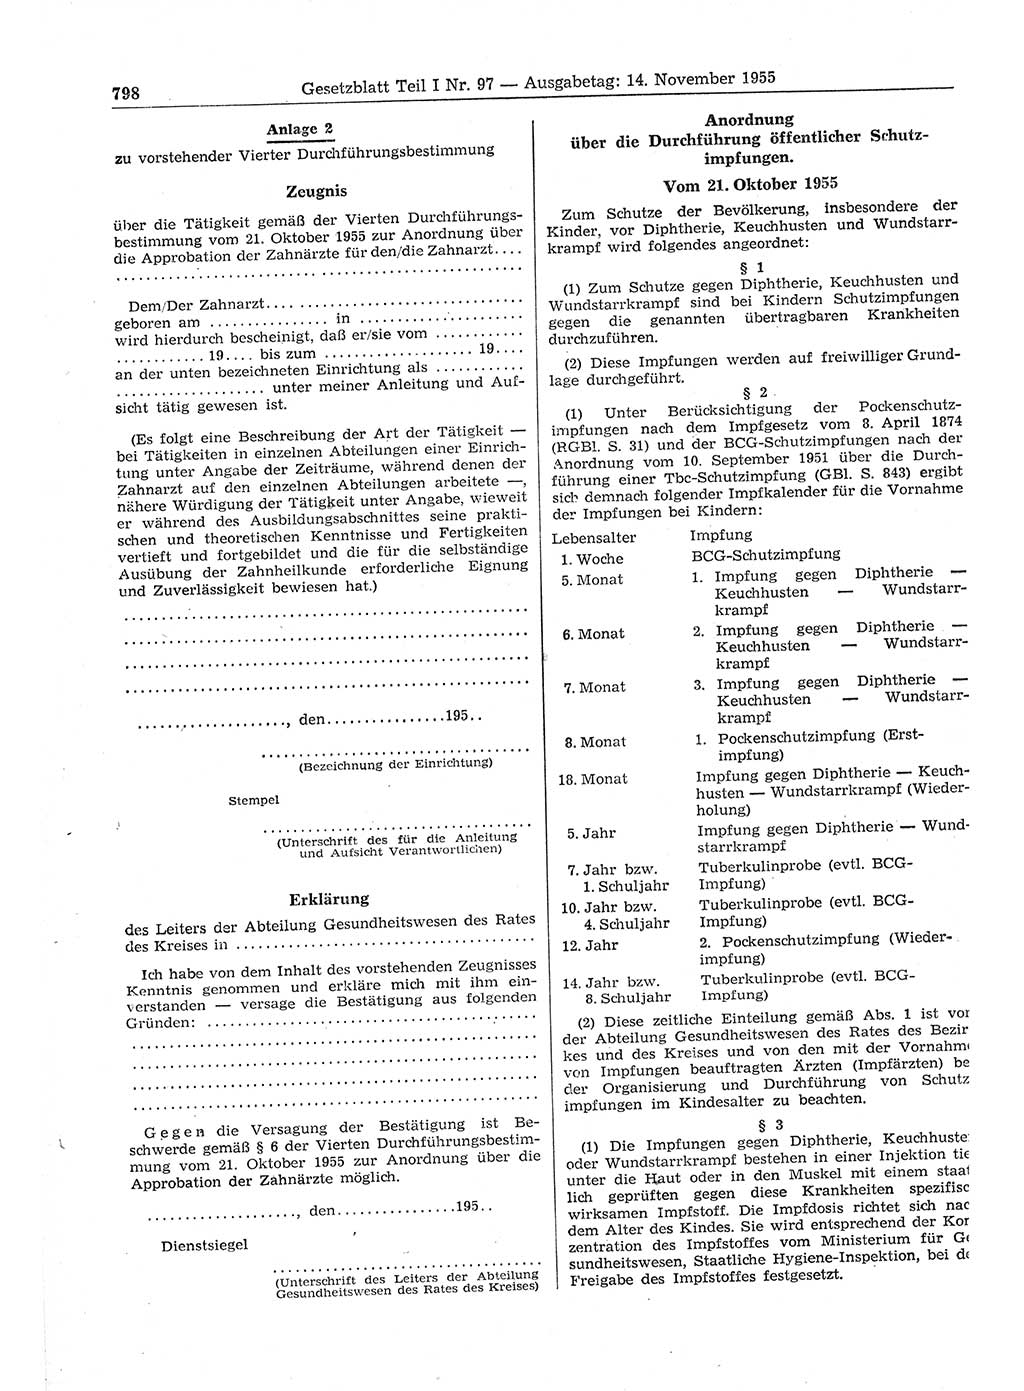 Gesetzblatt (GBl.) der Deutschen Demokratischen Republik (DDR) Teil Ⅰ 1955, Seite 798 (GBl. DDR Ⅰ 1955, S. 798)